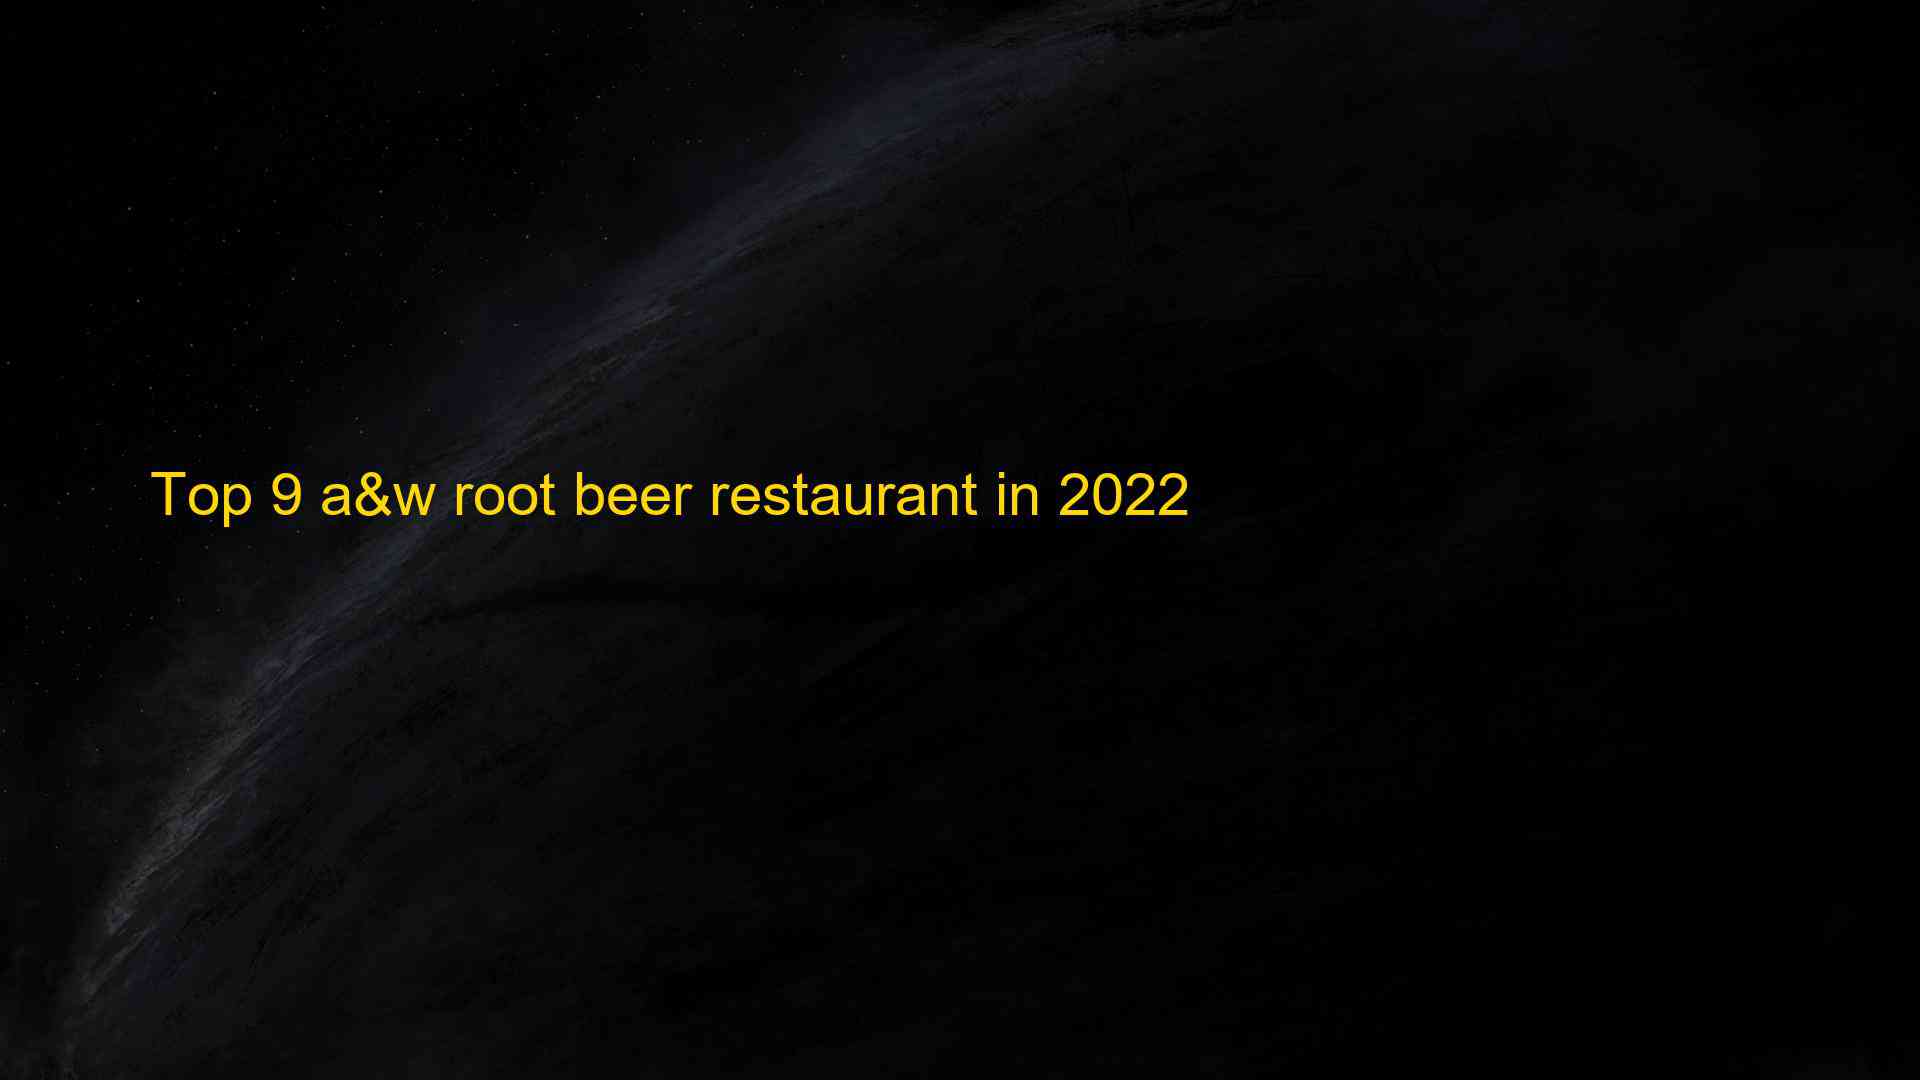 Top 9 aw root beer restaurant in 2022 1663388250